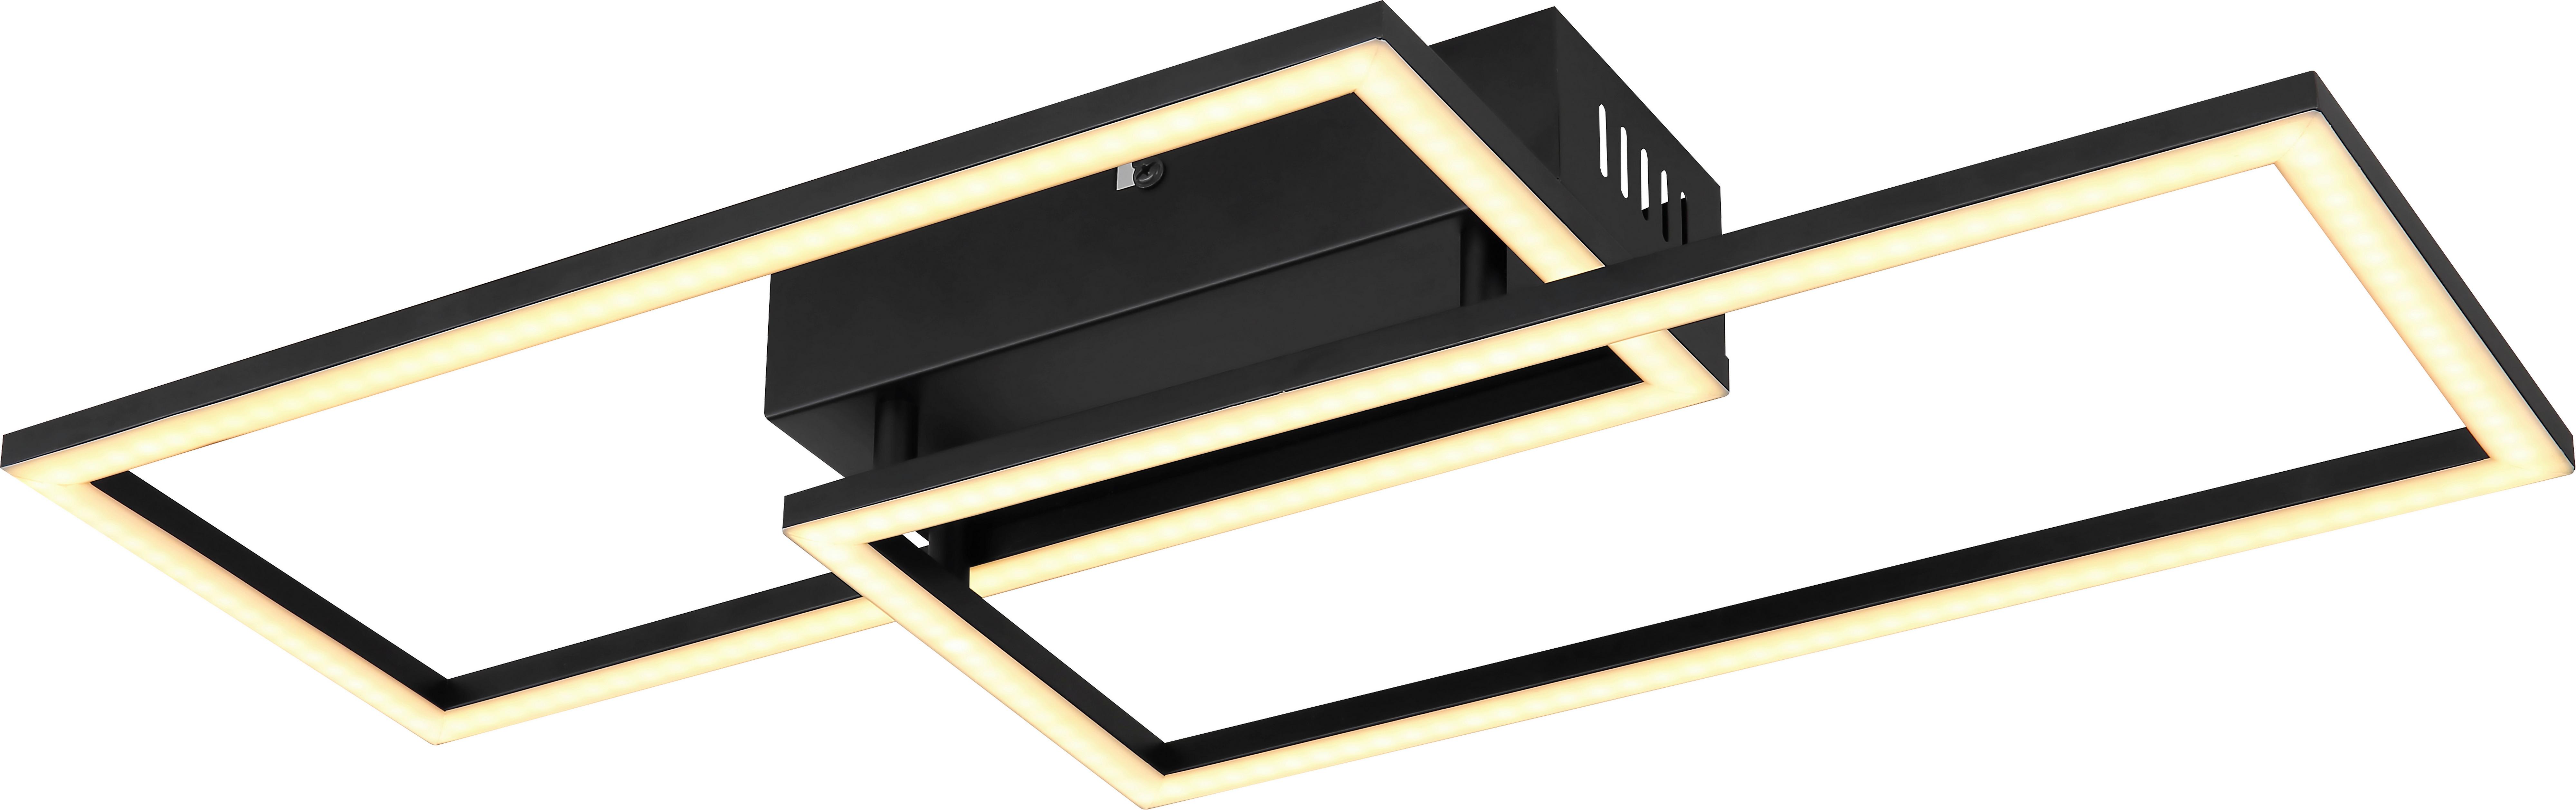 LED Mennyezeti Lámpa Rufio - Opál/Fekete, modern, Műanyag/Fém (52/24,2/6,2cm) - Premium Living